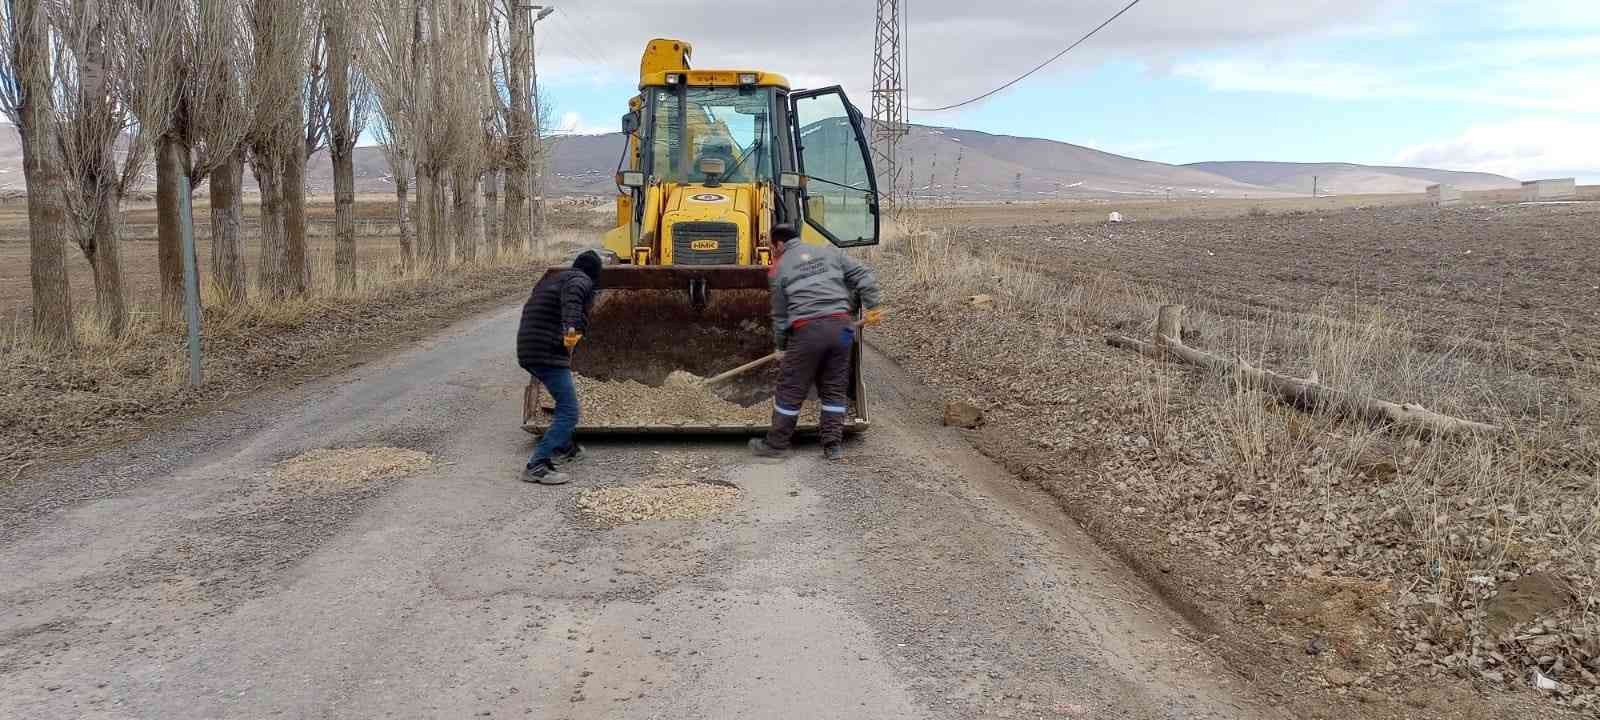 Bünyan Belediyesi bozulan yollar için harekete geçti #kayseri